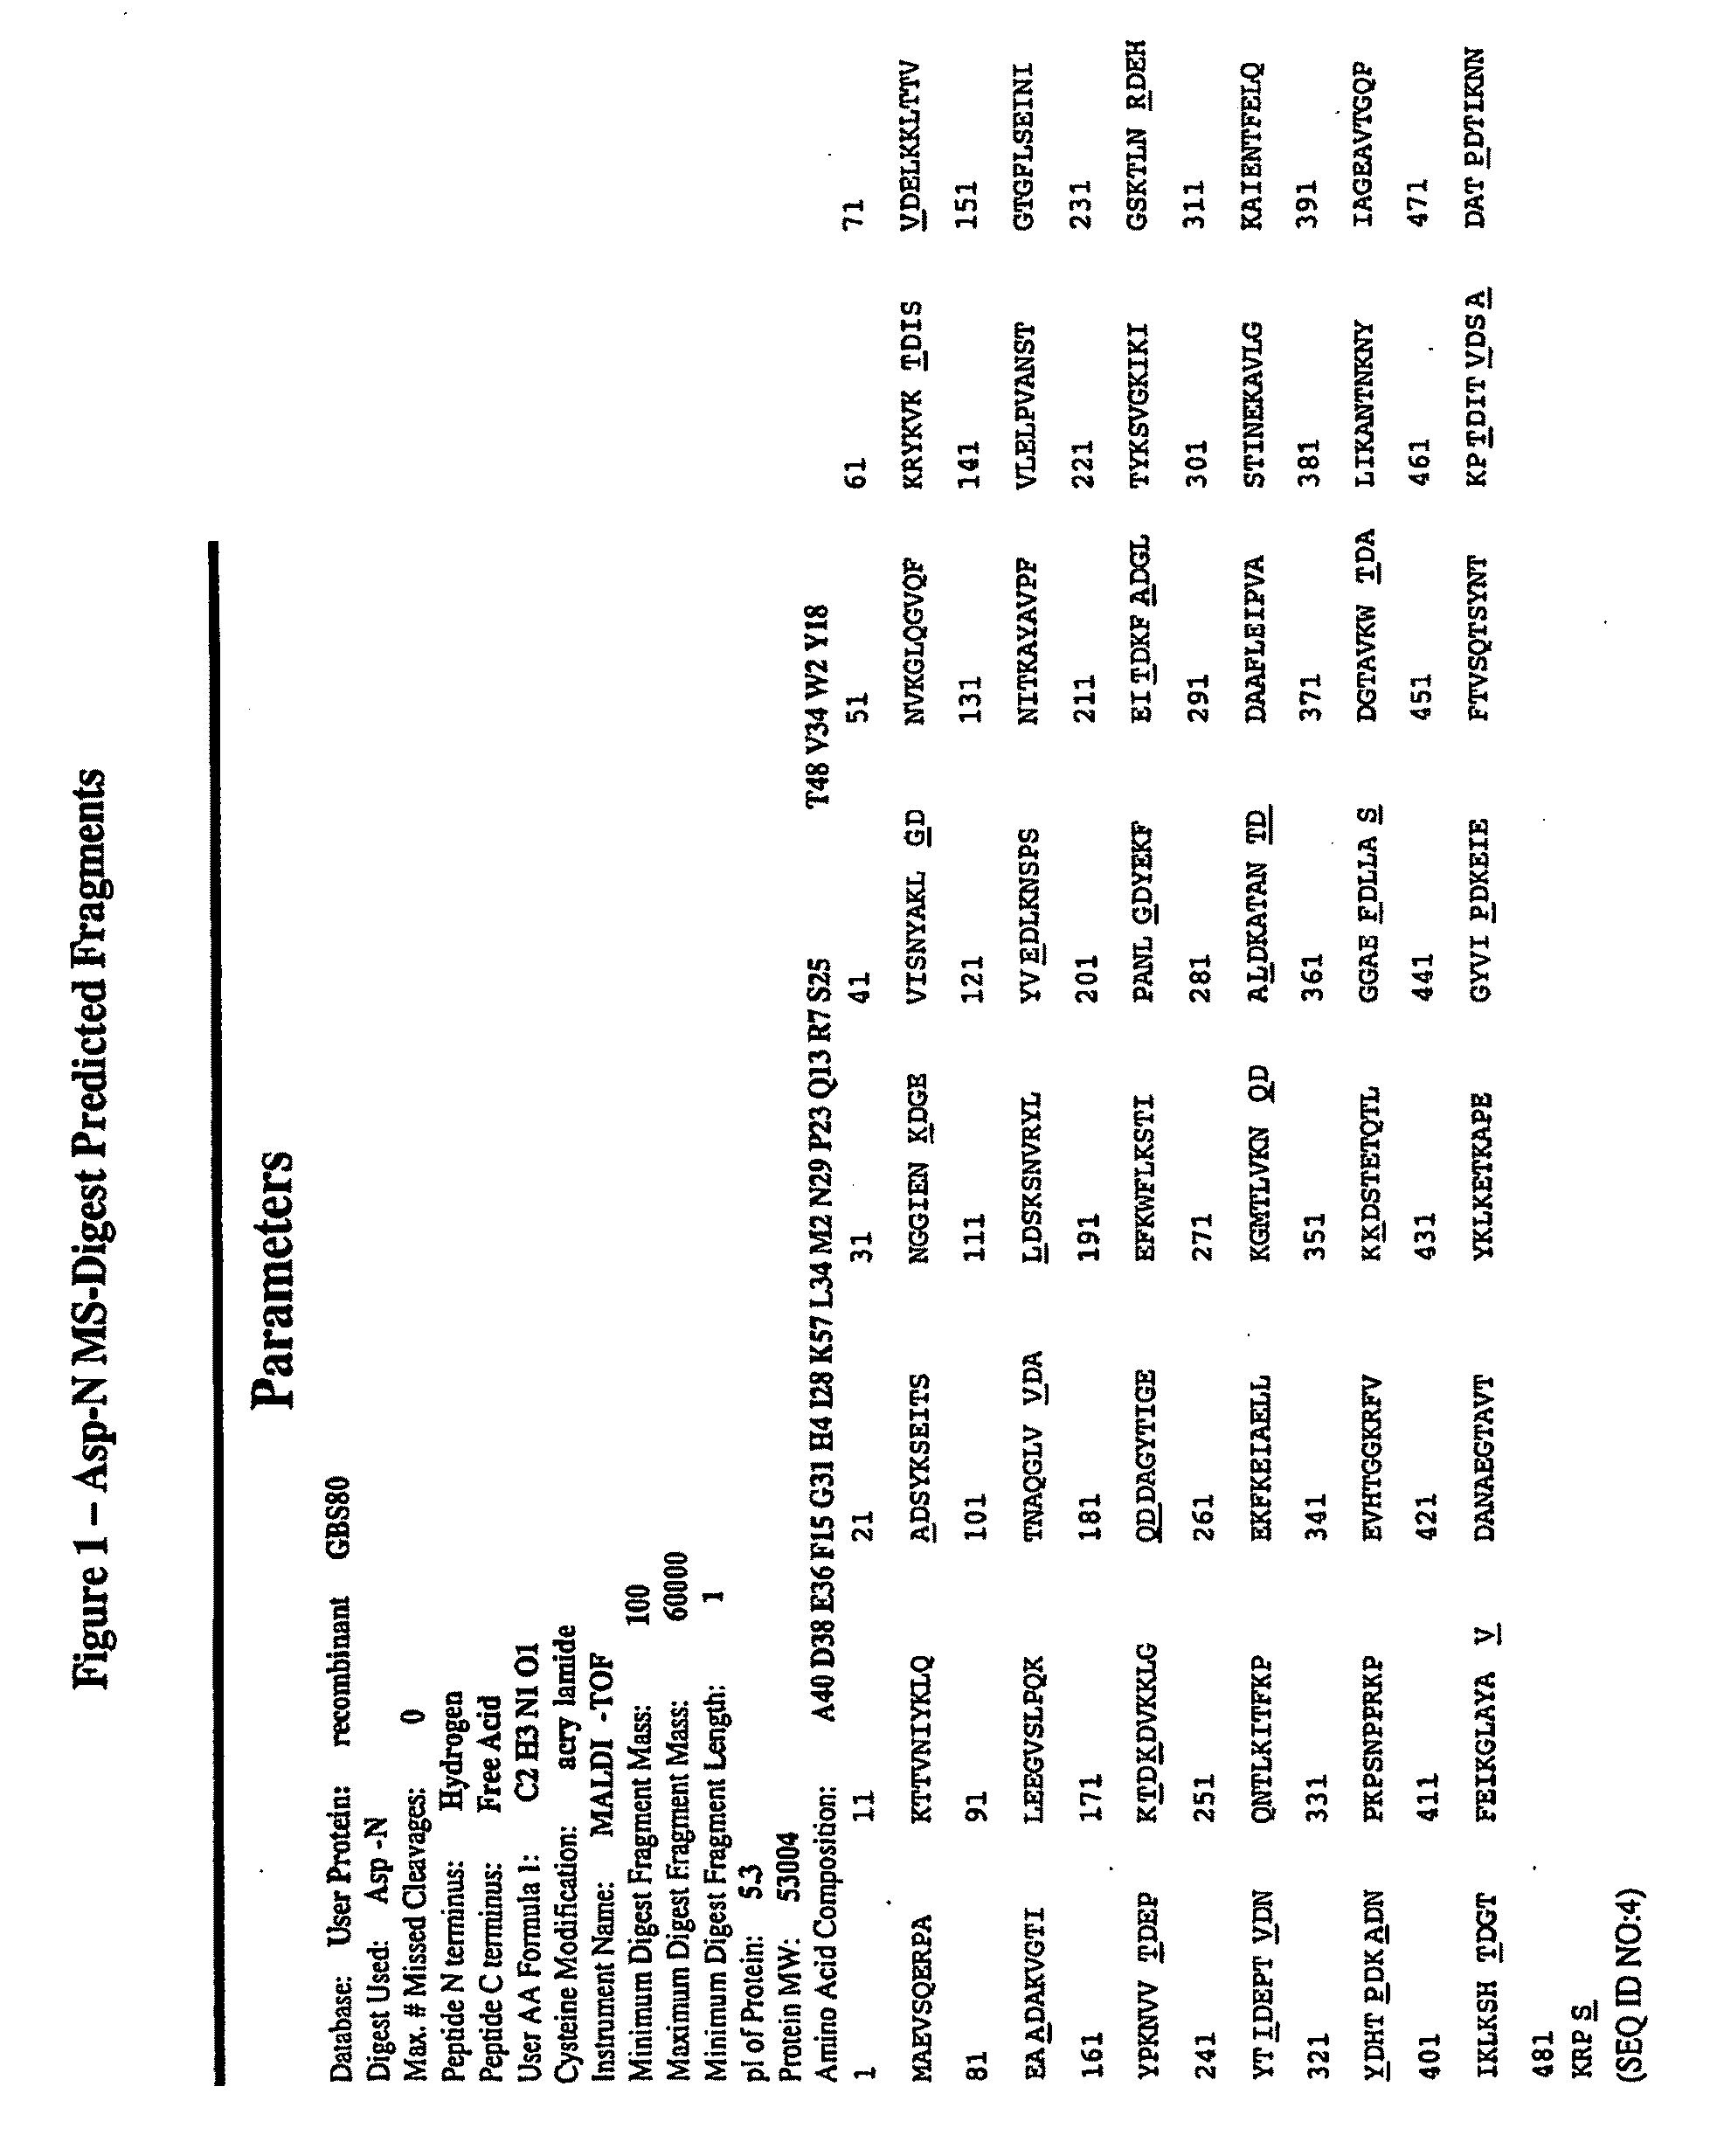 Immunogenic compositions for streptococcus agalactiae